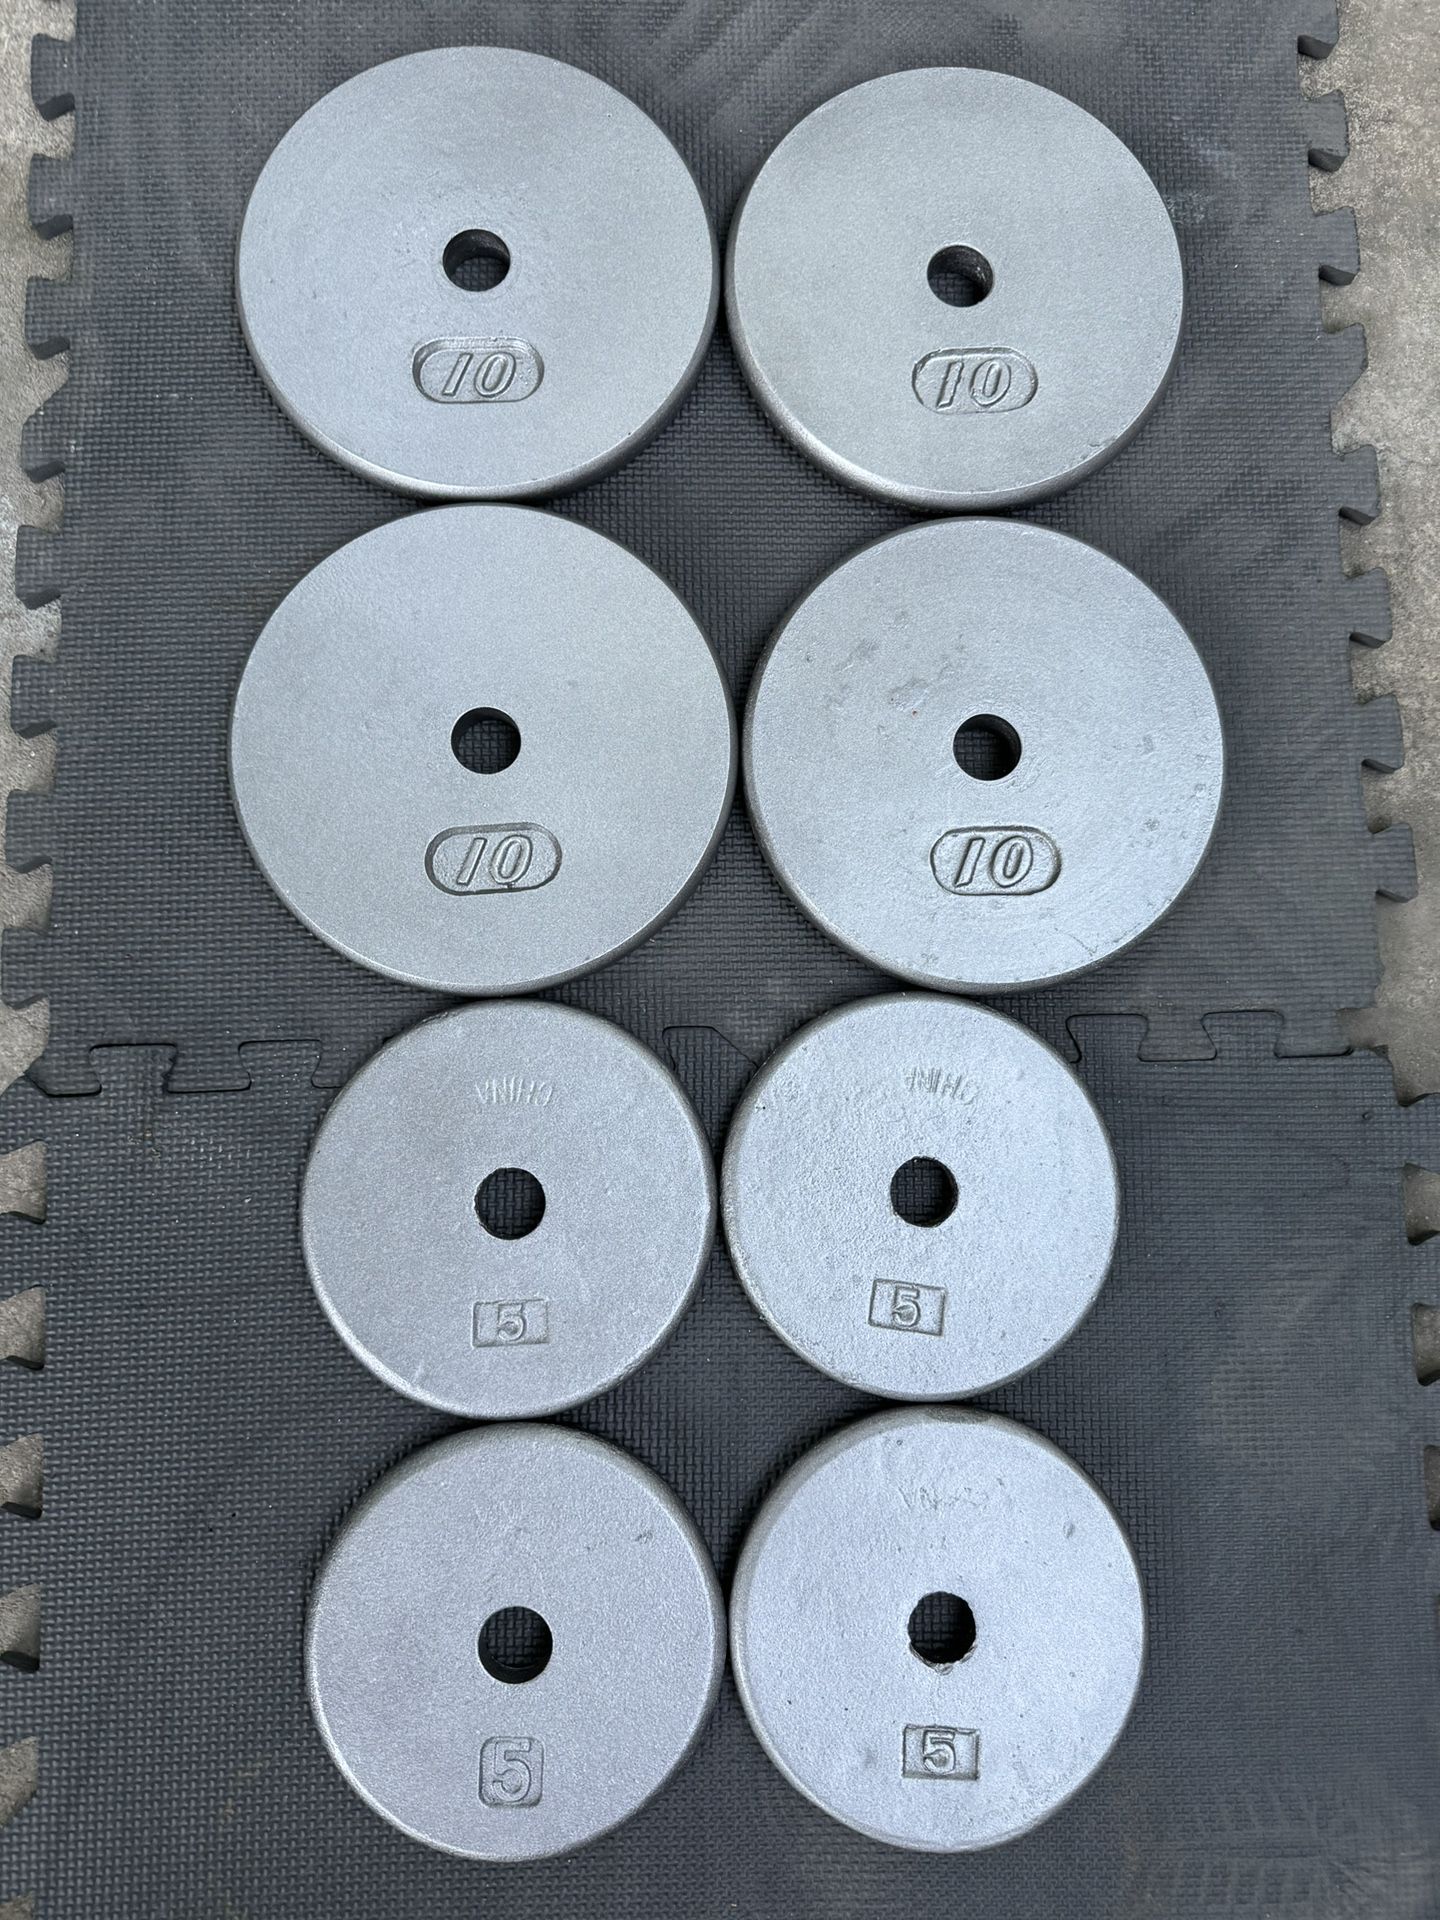 60 lbs Standard weights